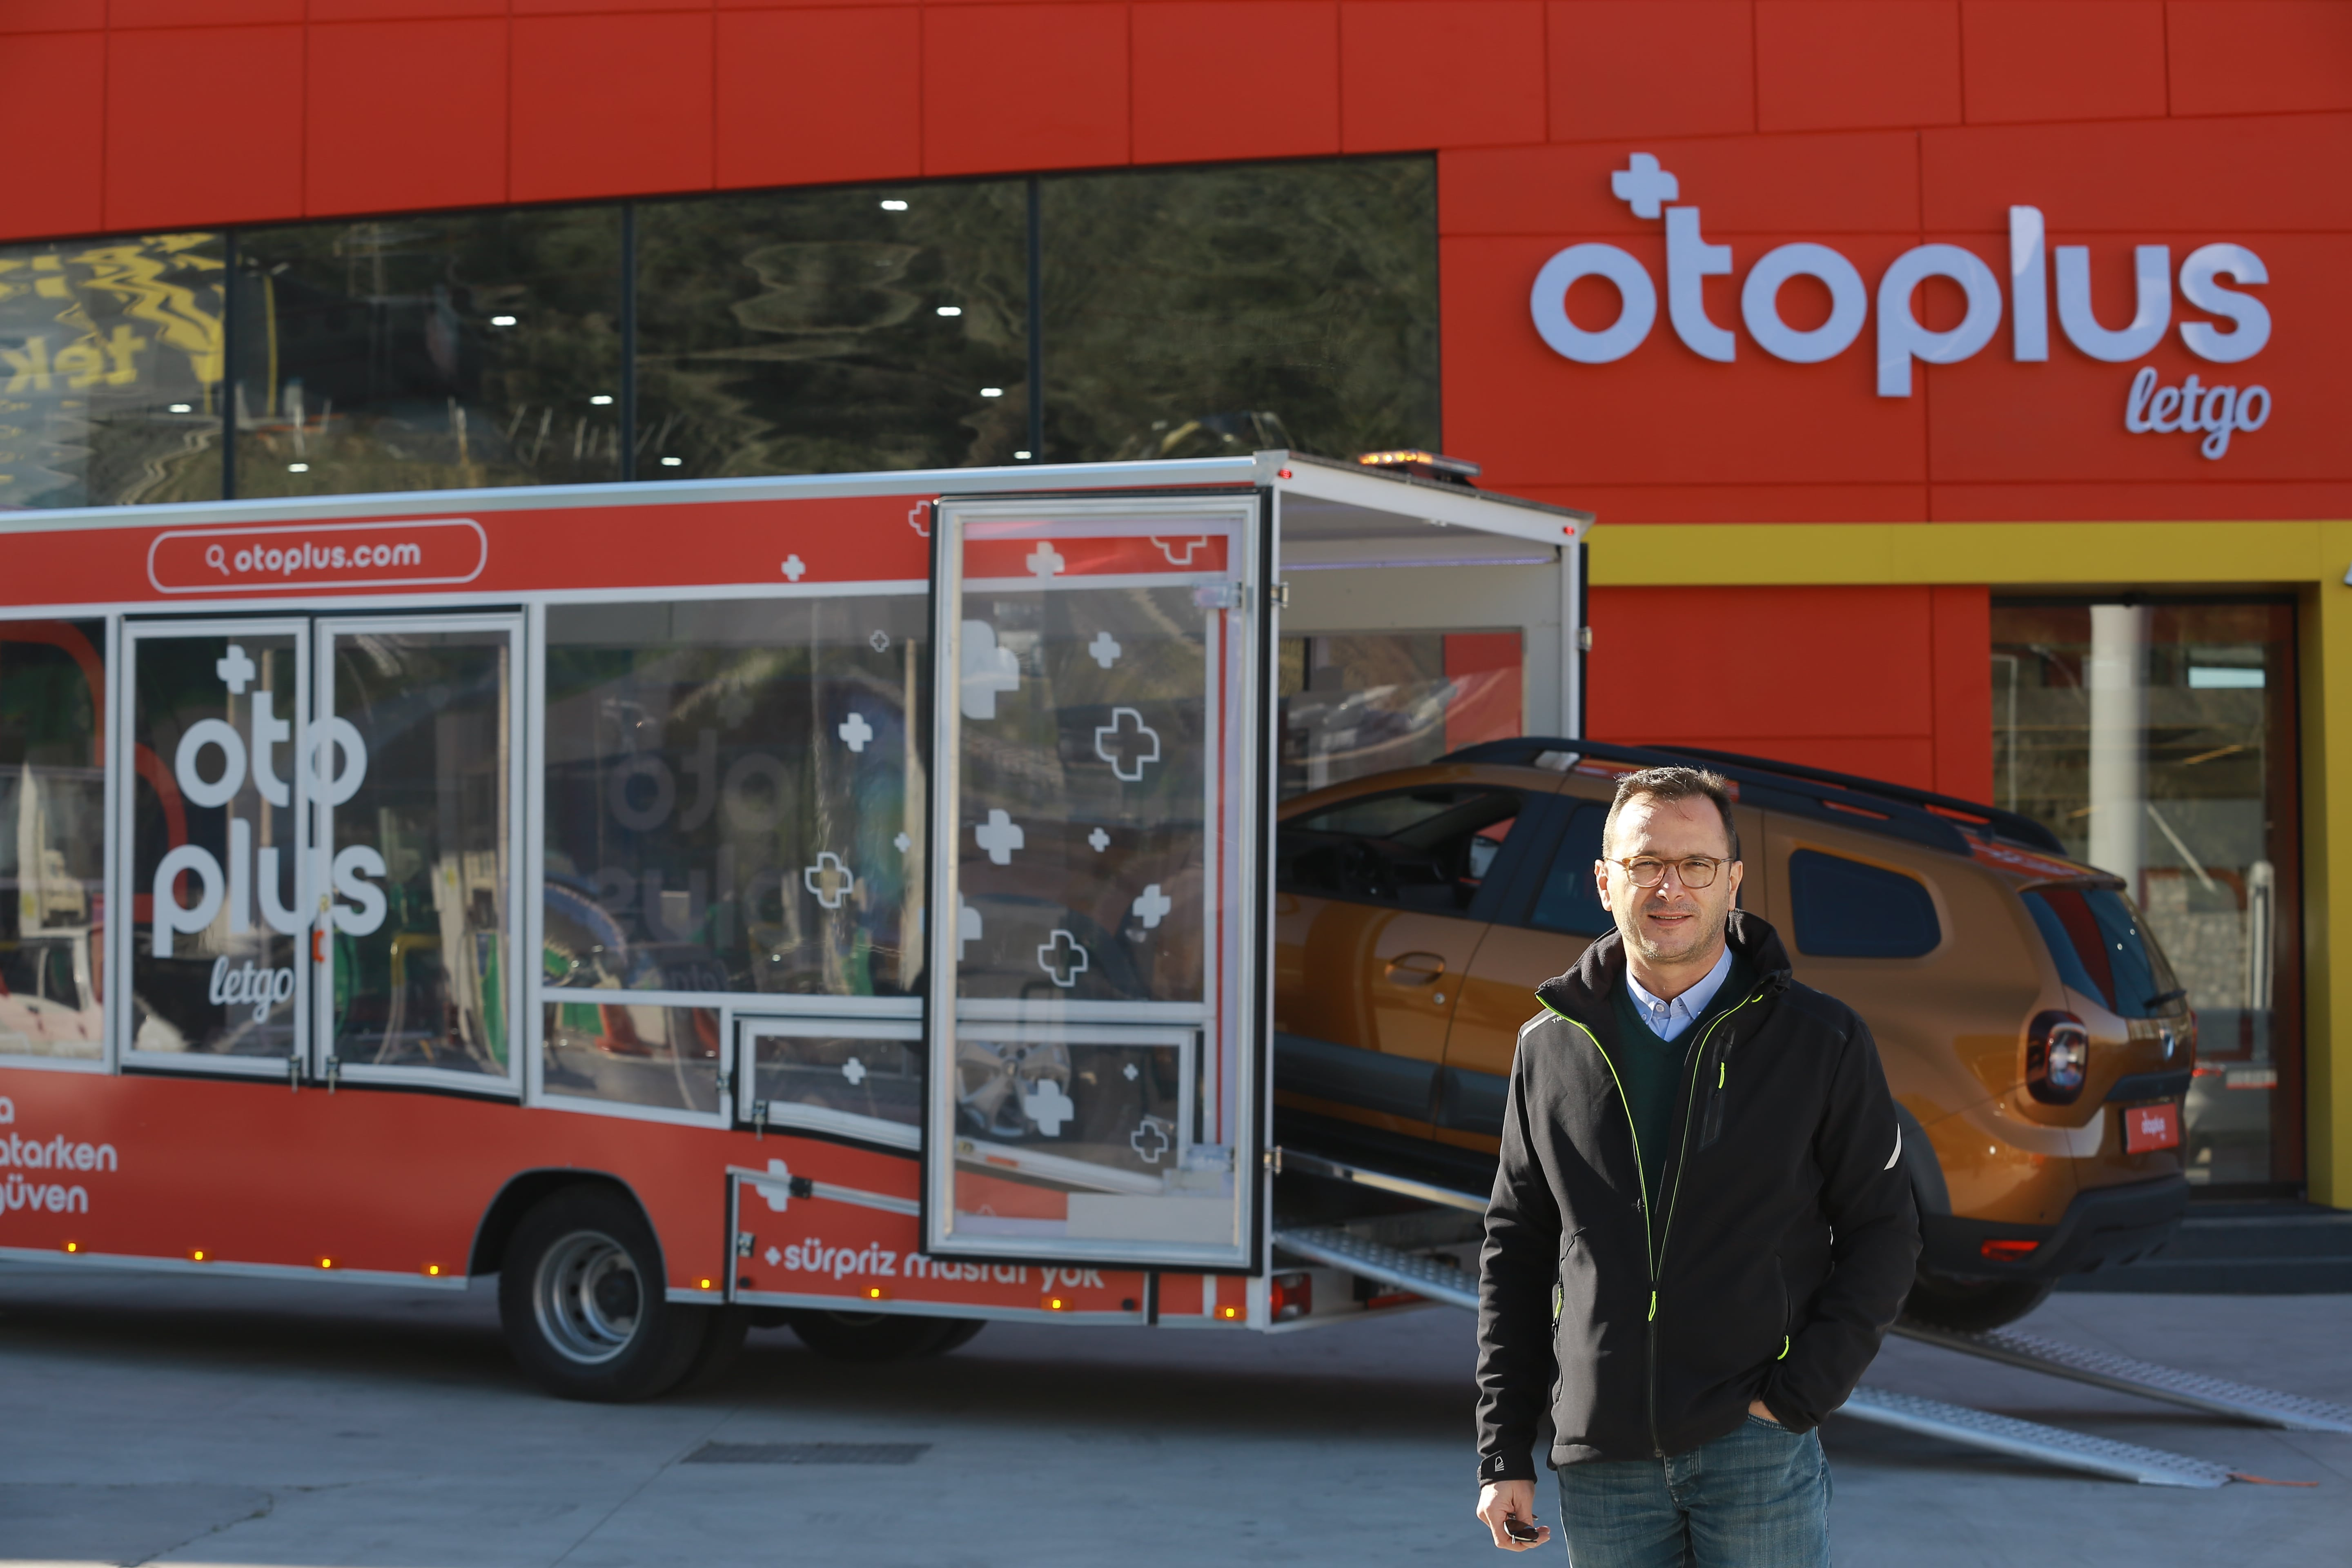 otoplus Adana’daki merkezinde araba satışına başladı